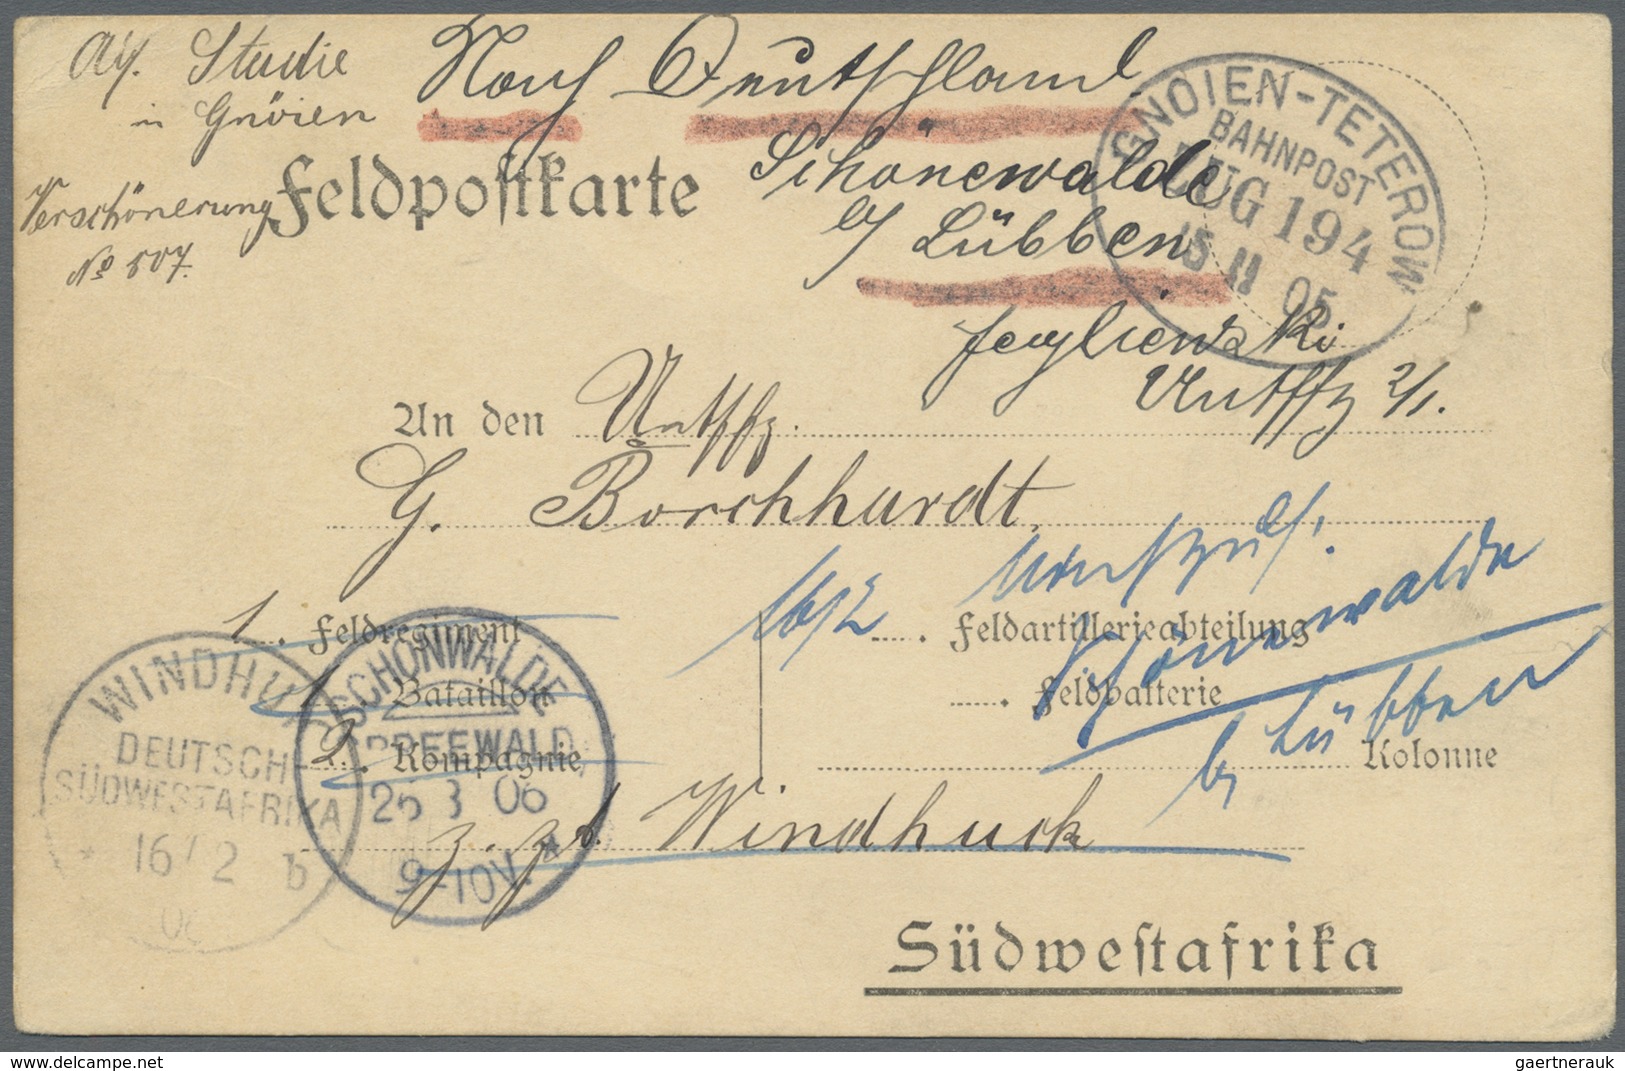 Br Deutsch-Südwestafrika - Besonderheiten: 1905 (15.11.), FP-Vordruckkarte Für Den Postverkehr Heimat-D - Deutsch-Südwestafrika